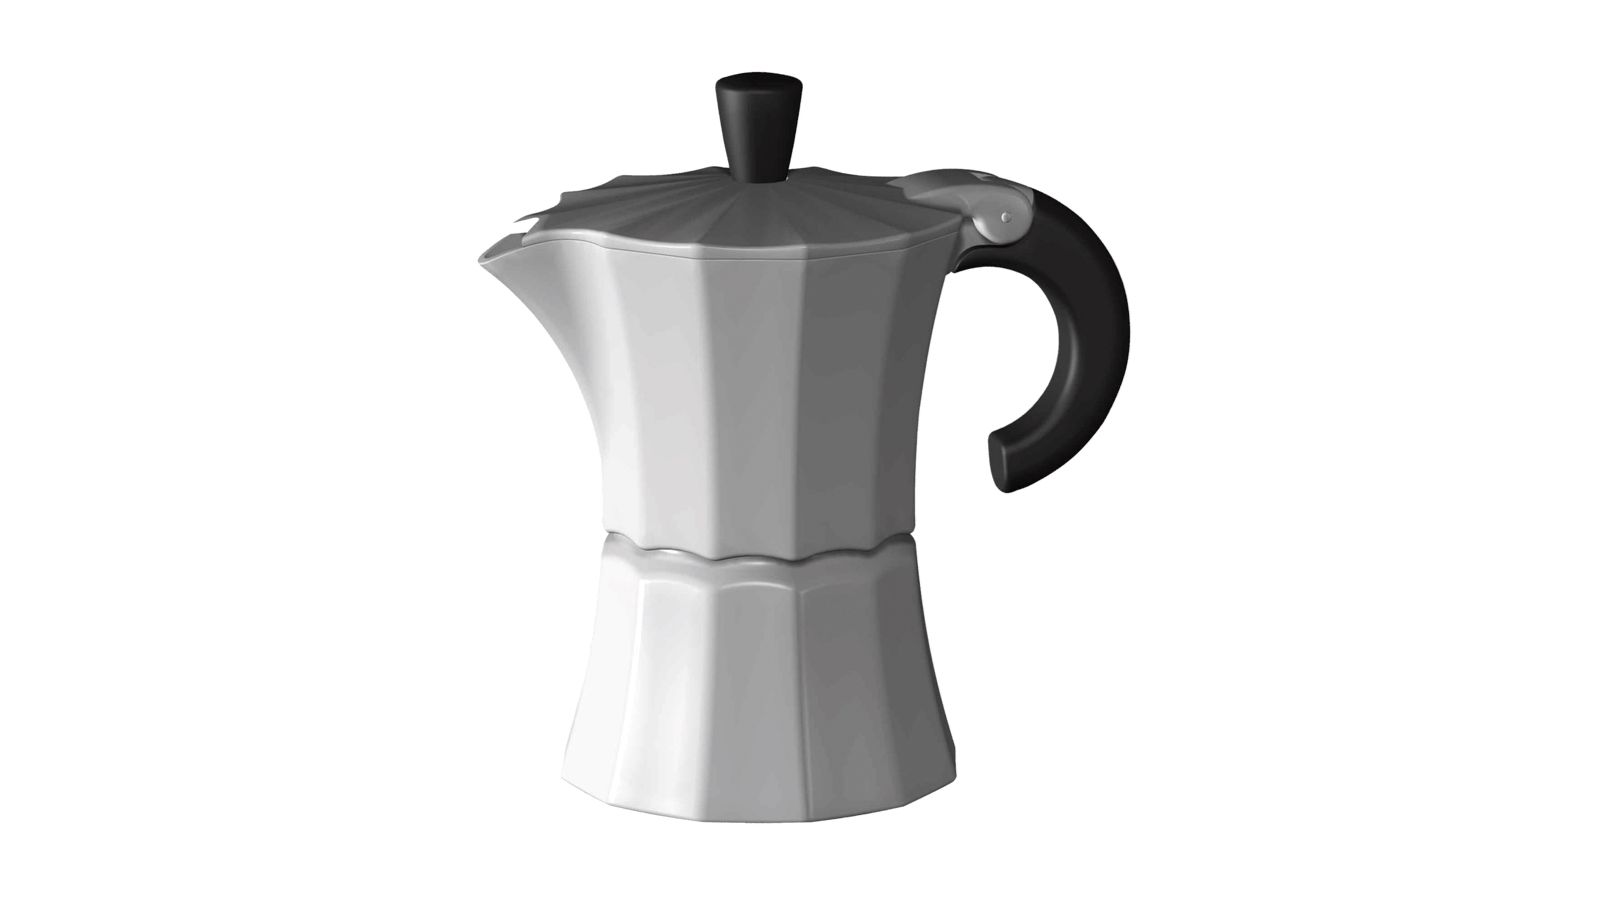 Příslušenství ke kávovaru - hliníková konvice, pro 6 šálků, "Morosina/White" pro kávovary Bosch Siemens - 00572033 BSH - Bosch / Siemens náhradní díly